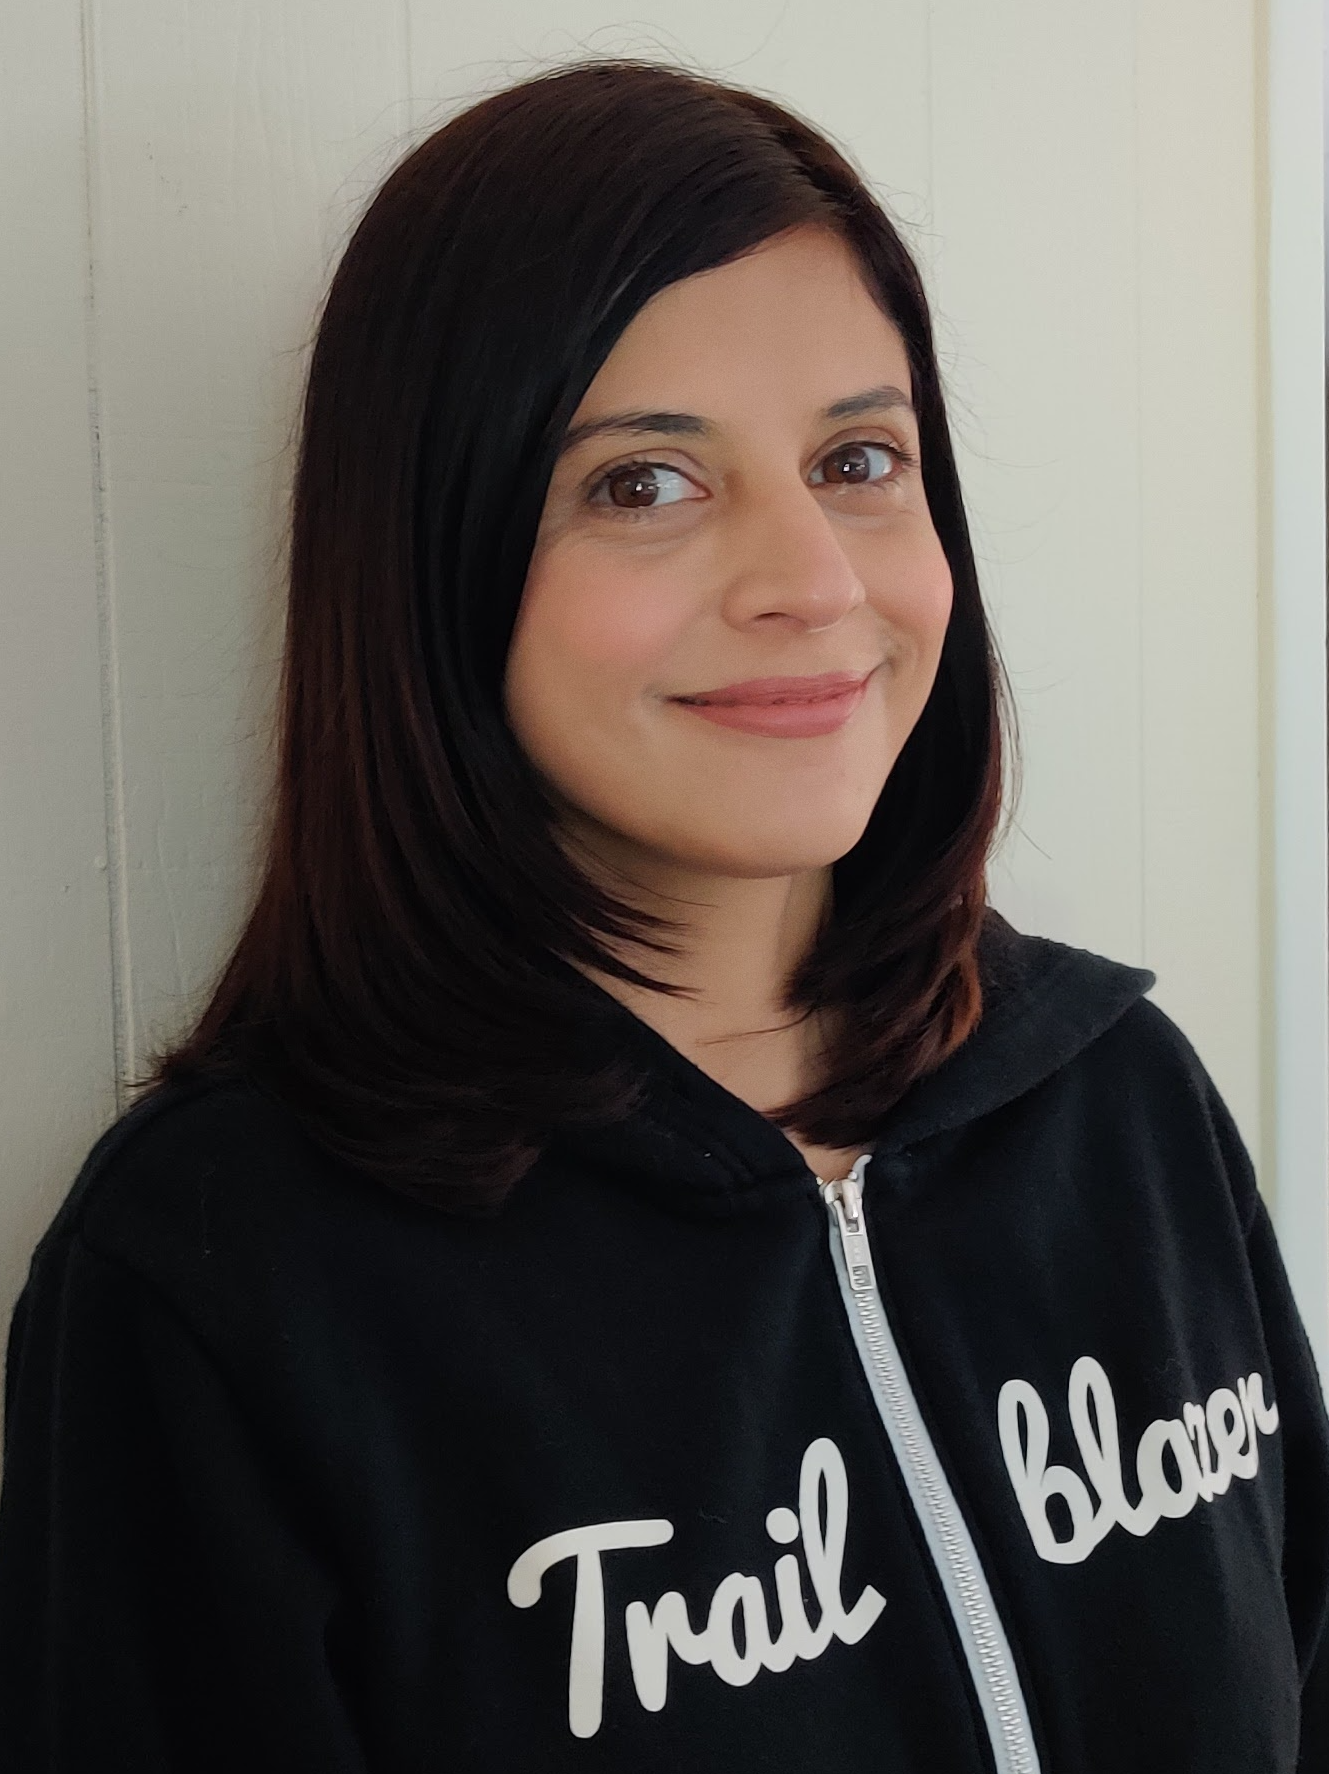 Perficient's Sarah Khalid, a Salesforce Technical Architect